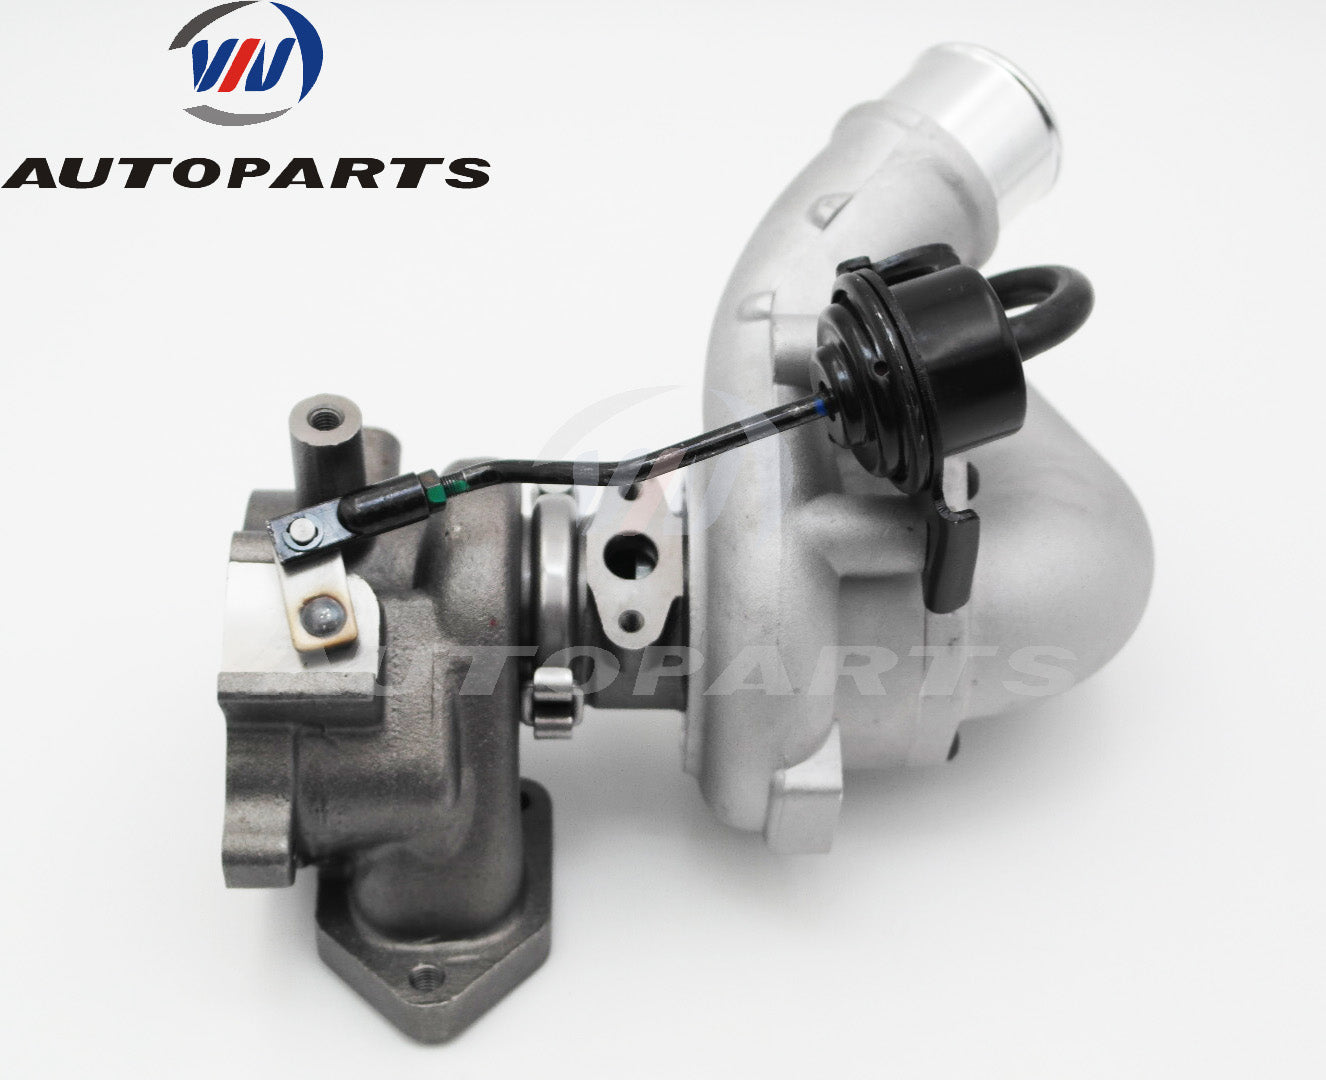 VIV AUTOPARTS Turbocharger 49590-45607 for Kia Bongo K2500 1.5L Diesel Engine